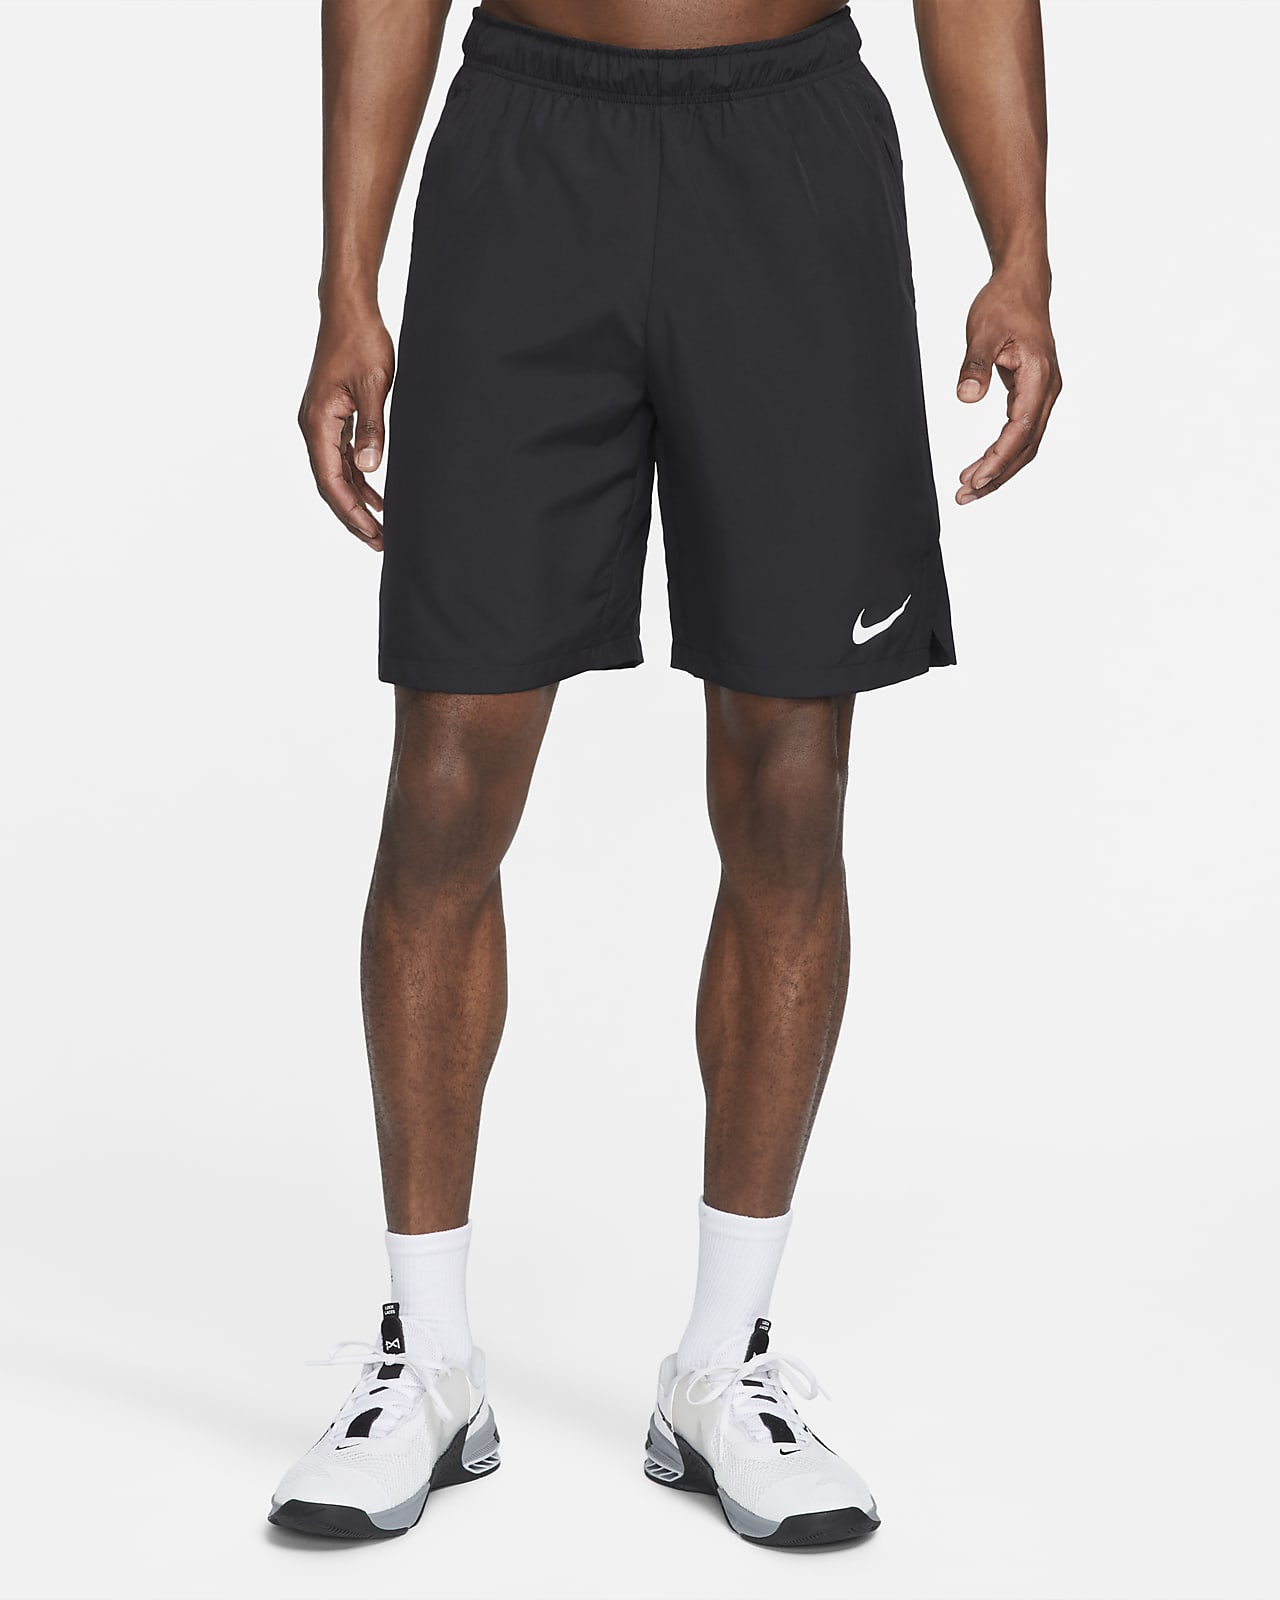 Ανδρικό υφαντό σορτς προπόνησης Nike Dri-FIT 23 cm